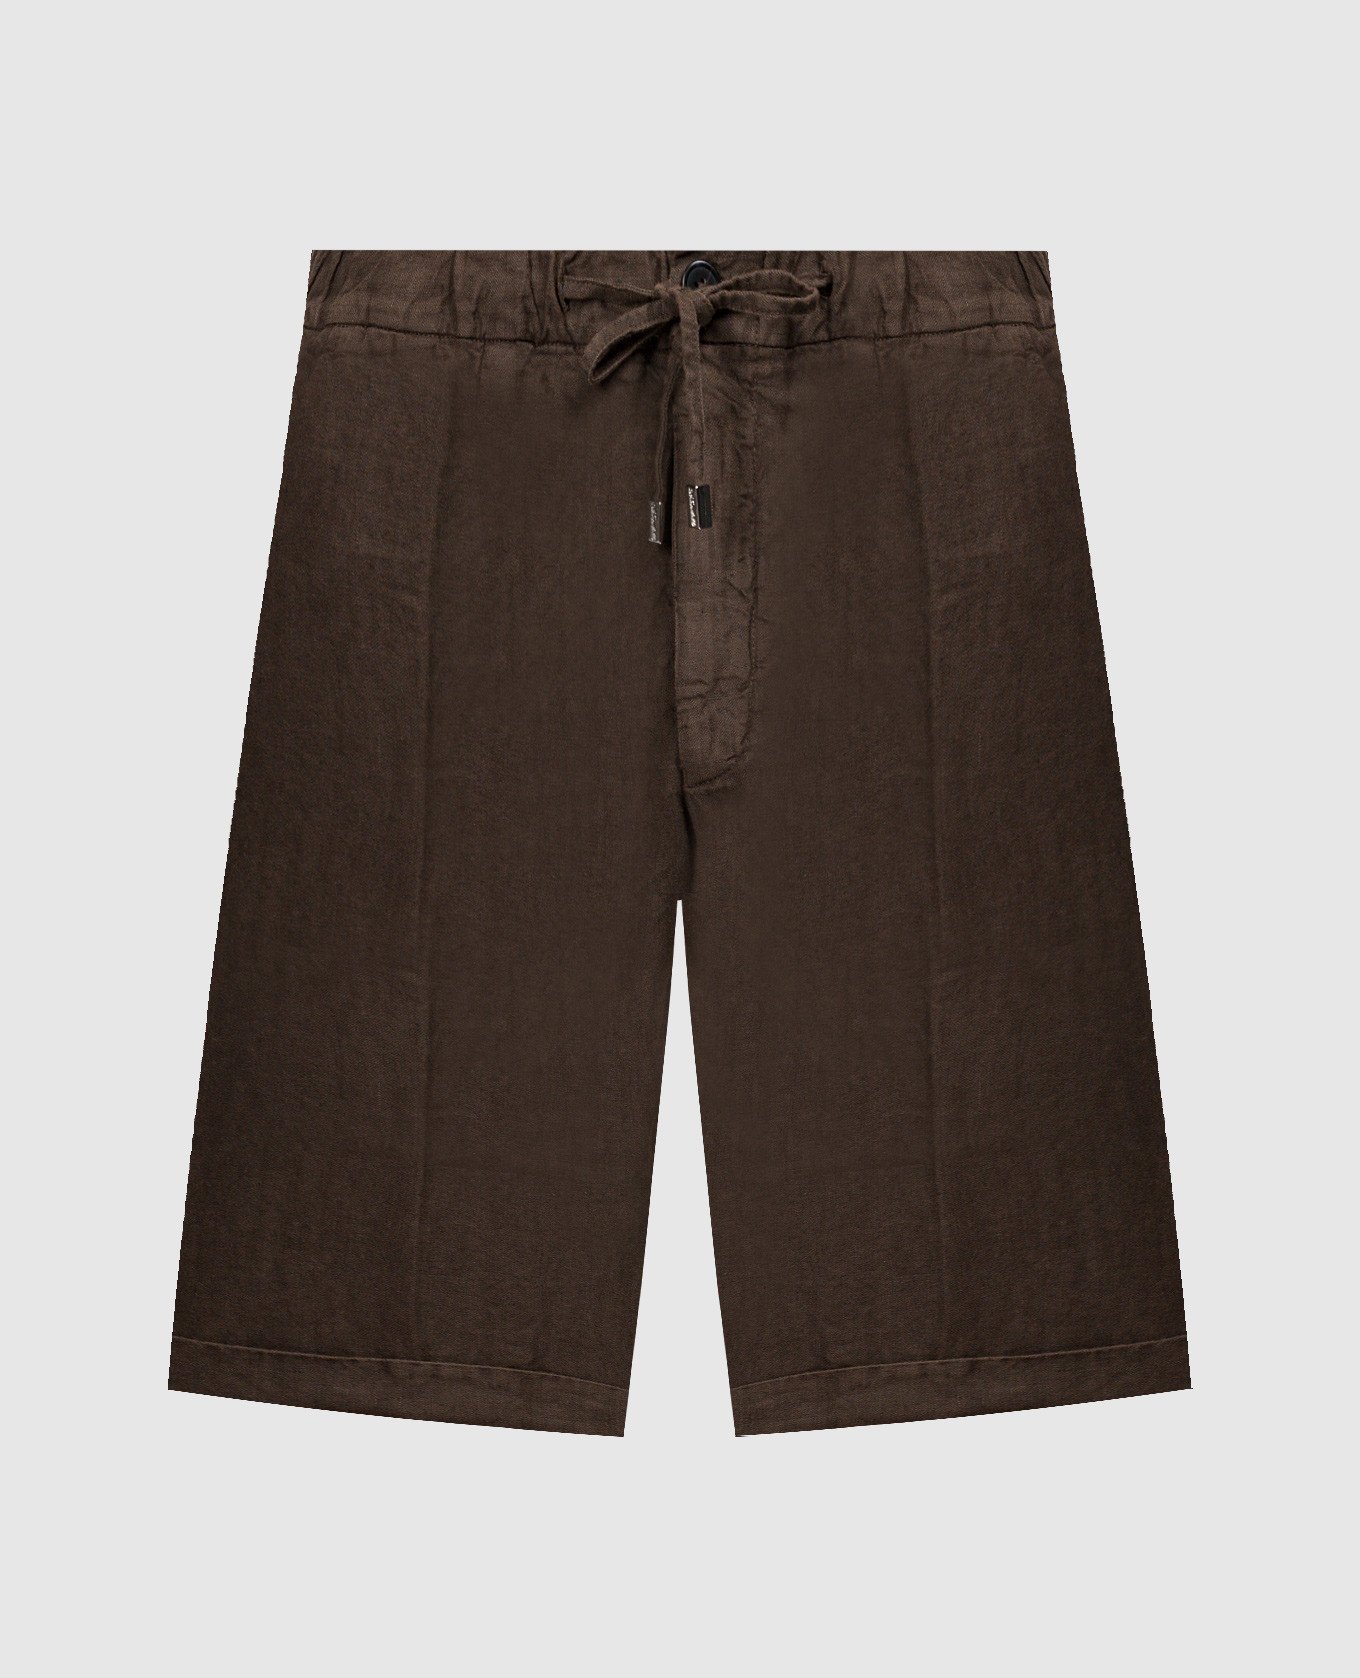 Brown linen shorts